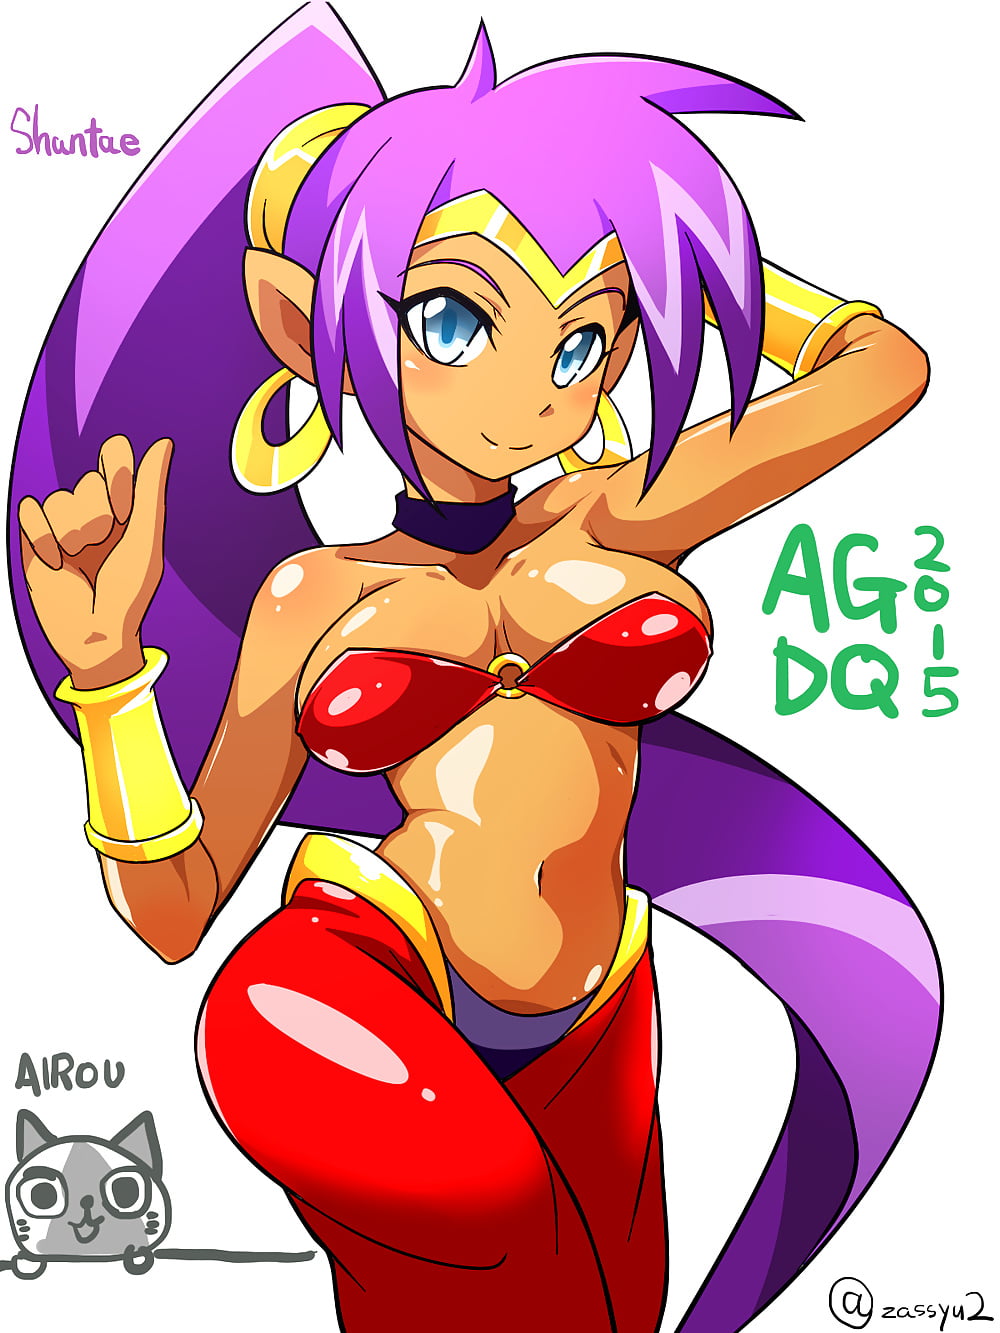 Shantae (1/131)